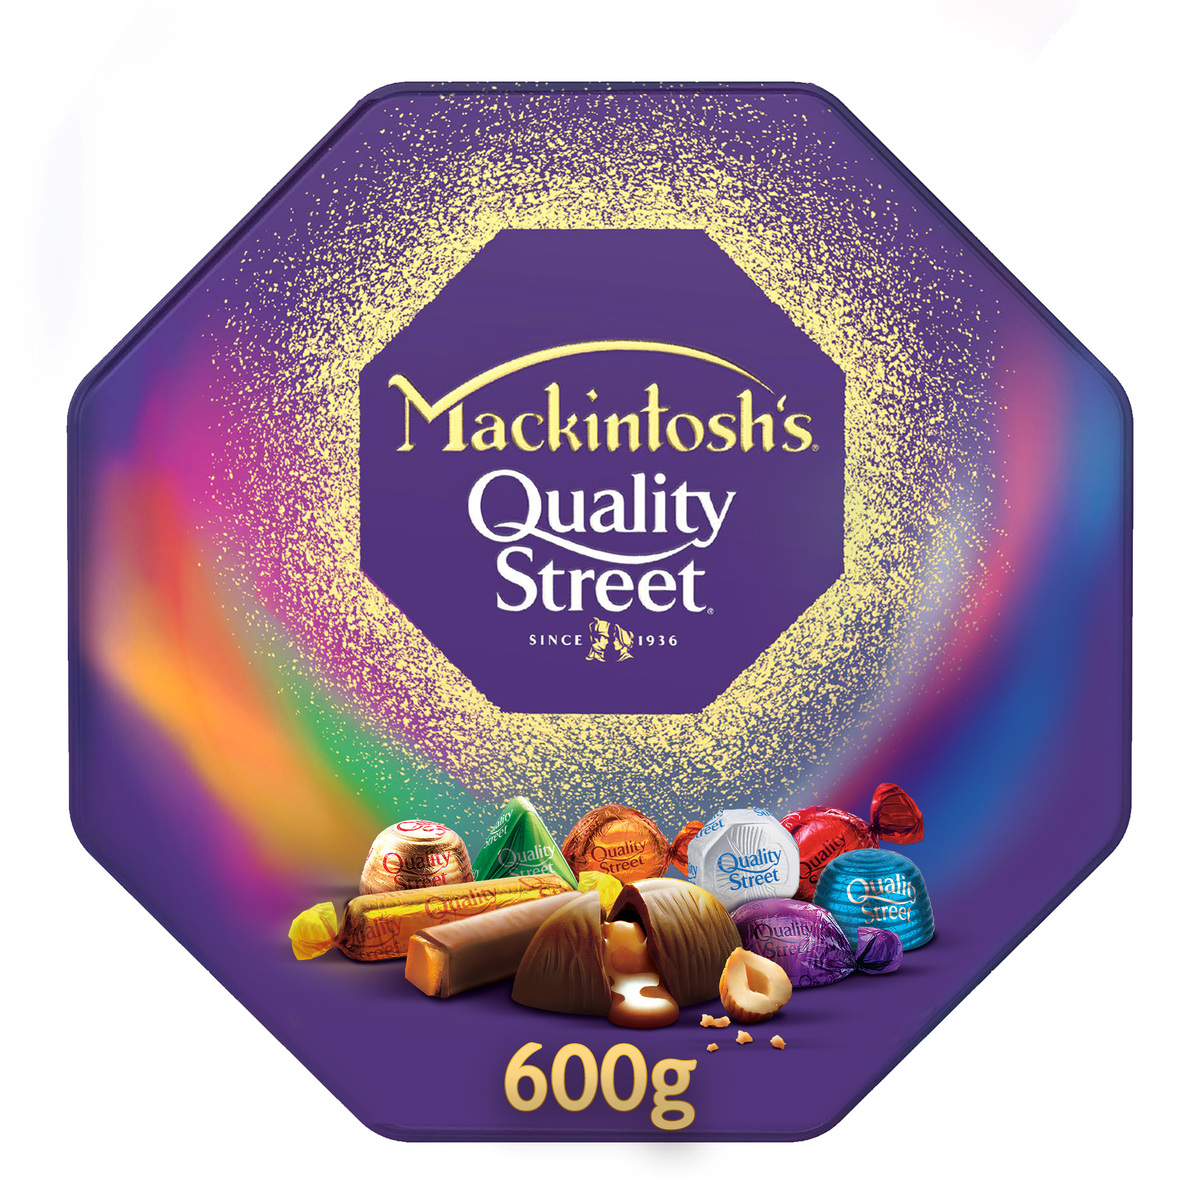 اشتري قم بشراء ماكنتوش كواليتي ستريت شوكولاتة 600 جم Online at Best Price من الموقع - من لولو هايبر ماركت Boxed Chocolate في السعودية